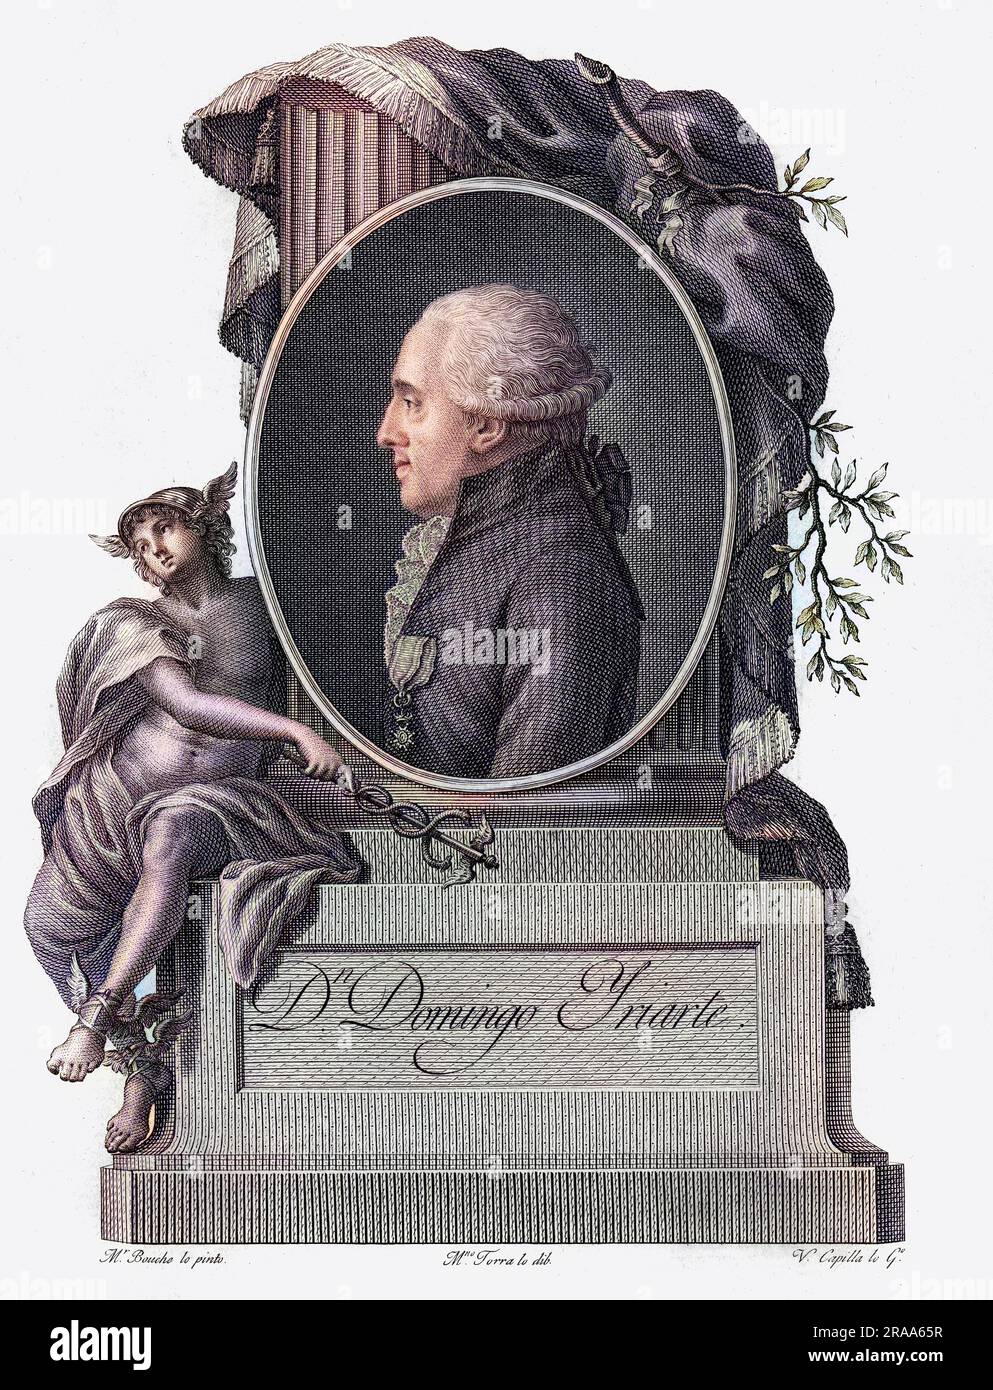 DOMINGO YRIARTE diplomate espagnol, avec un bel ornement de Hermes/Mercury. Date: 1746 - 1795 Banque D'Images